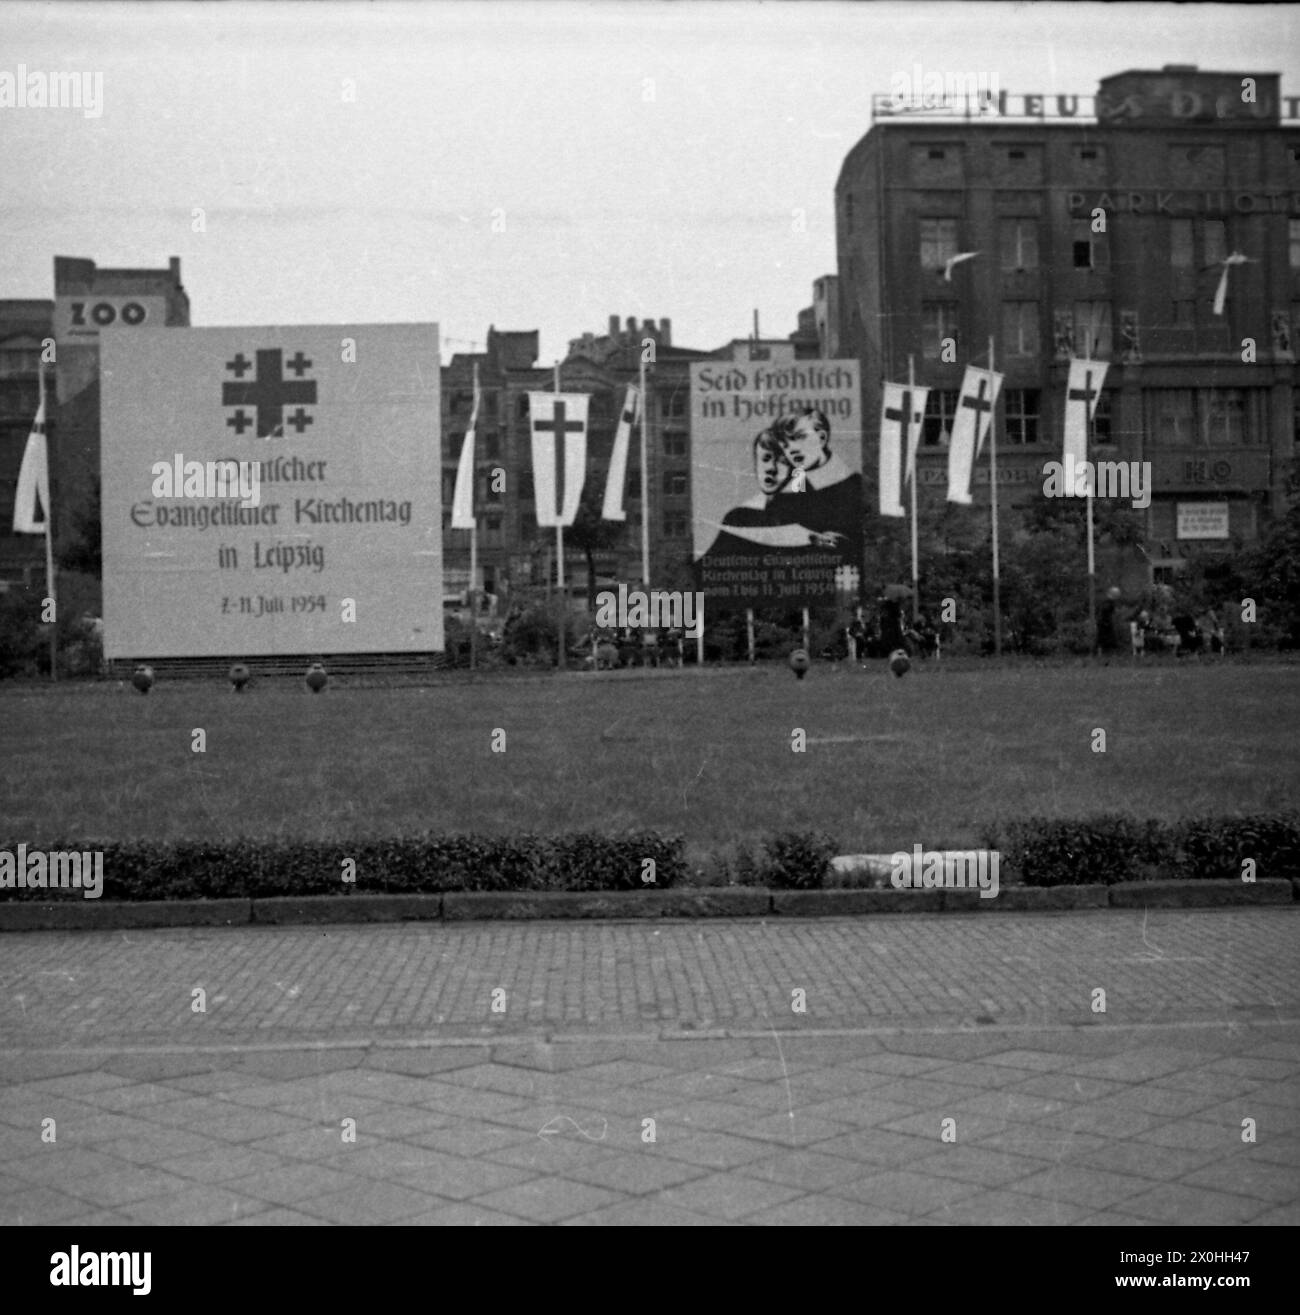 Plakate auf einem Platz en Leipzig während des evangelischen Kirchtentages. (Aufnahmedatum: 07.07.1954-11.07.1954) Foto de stock